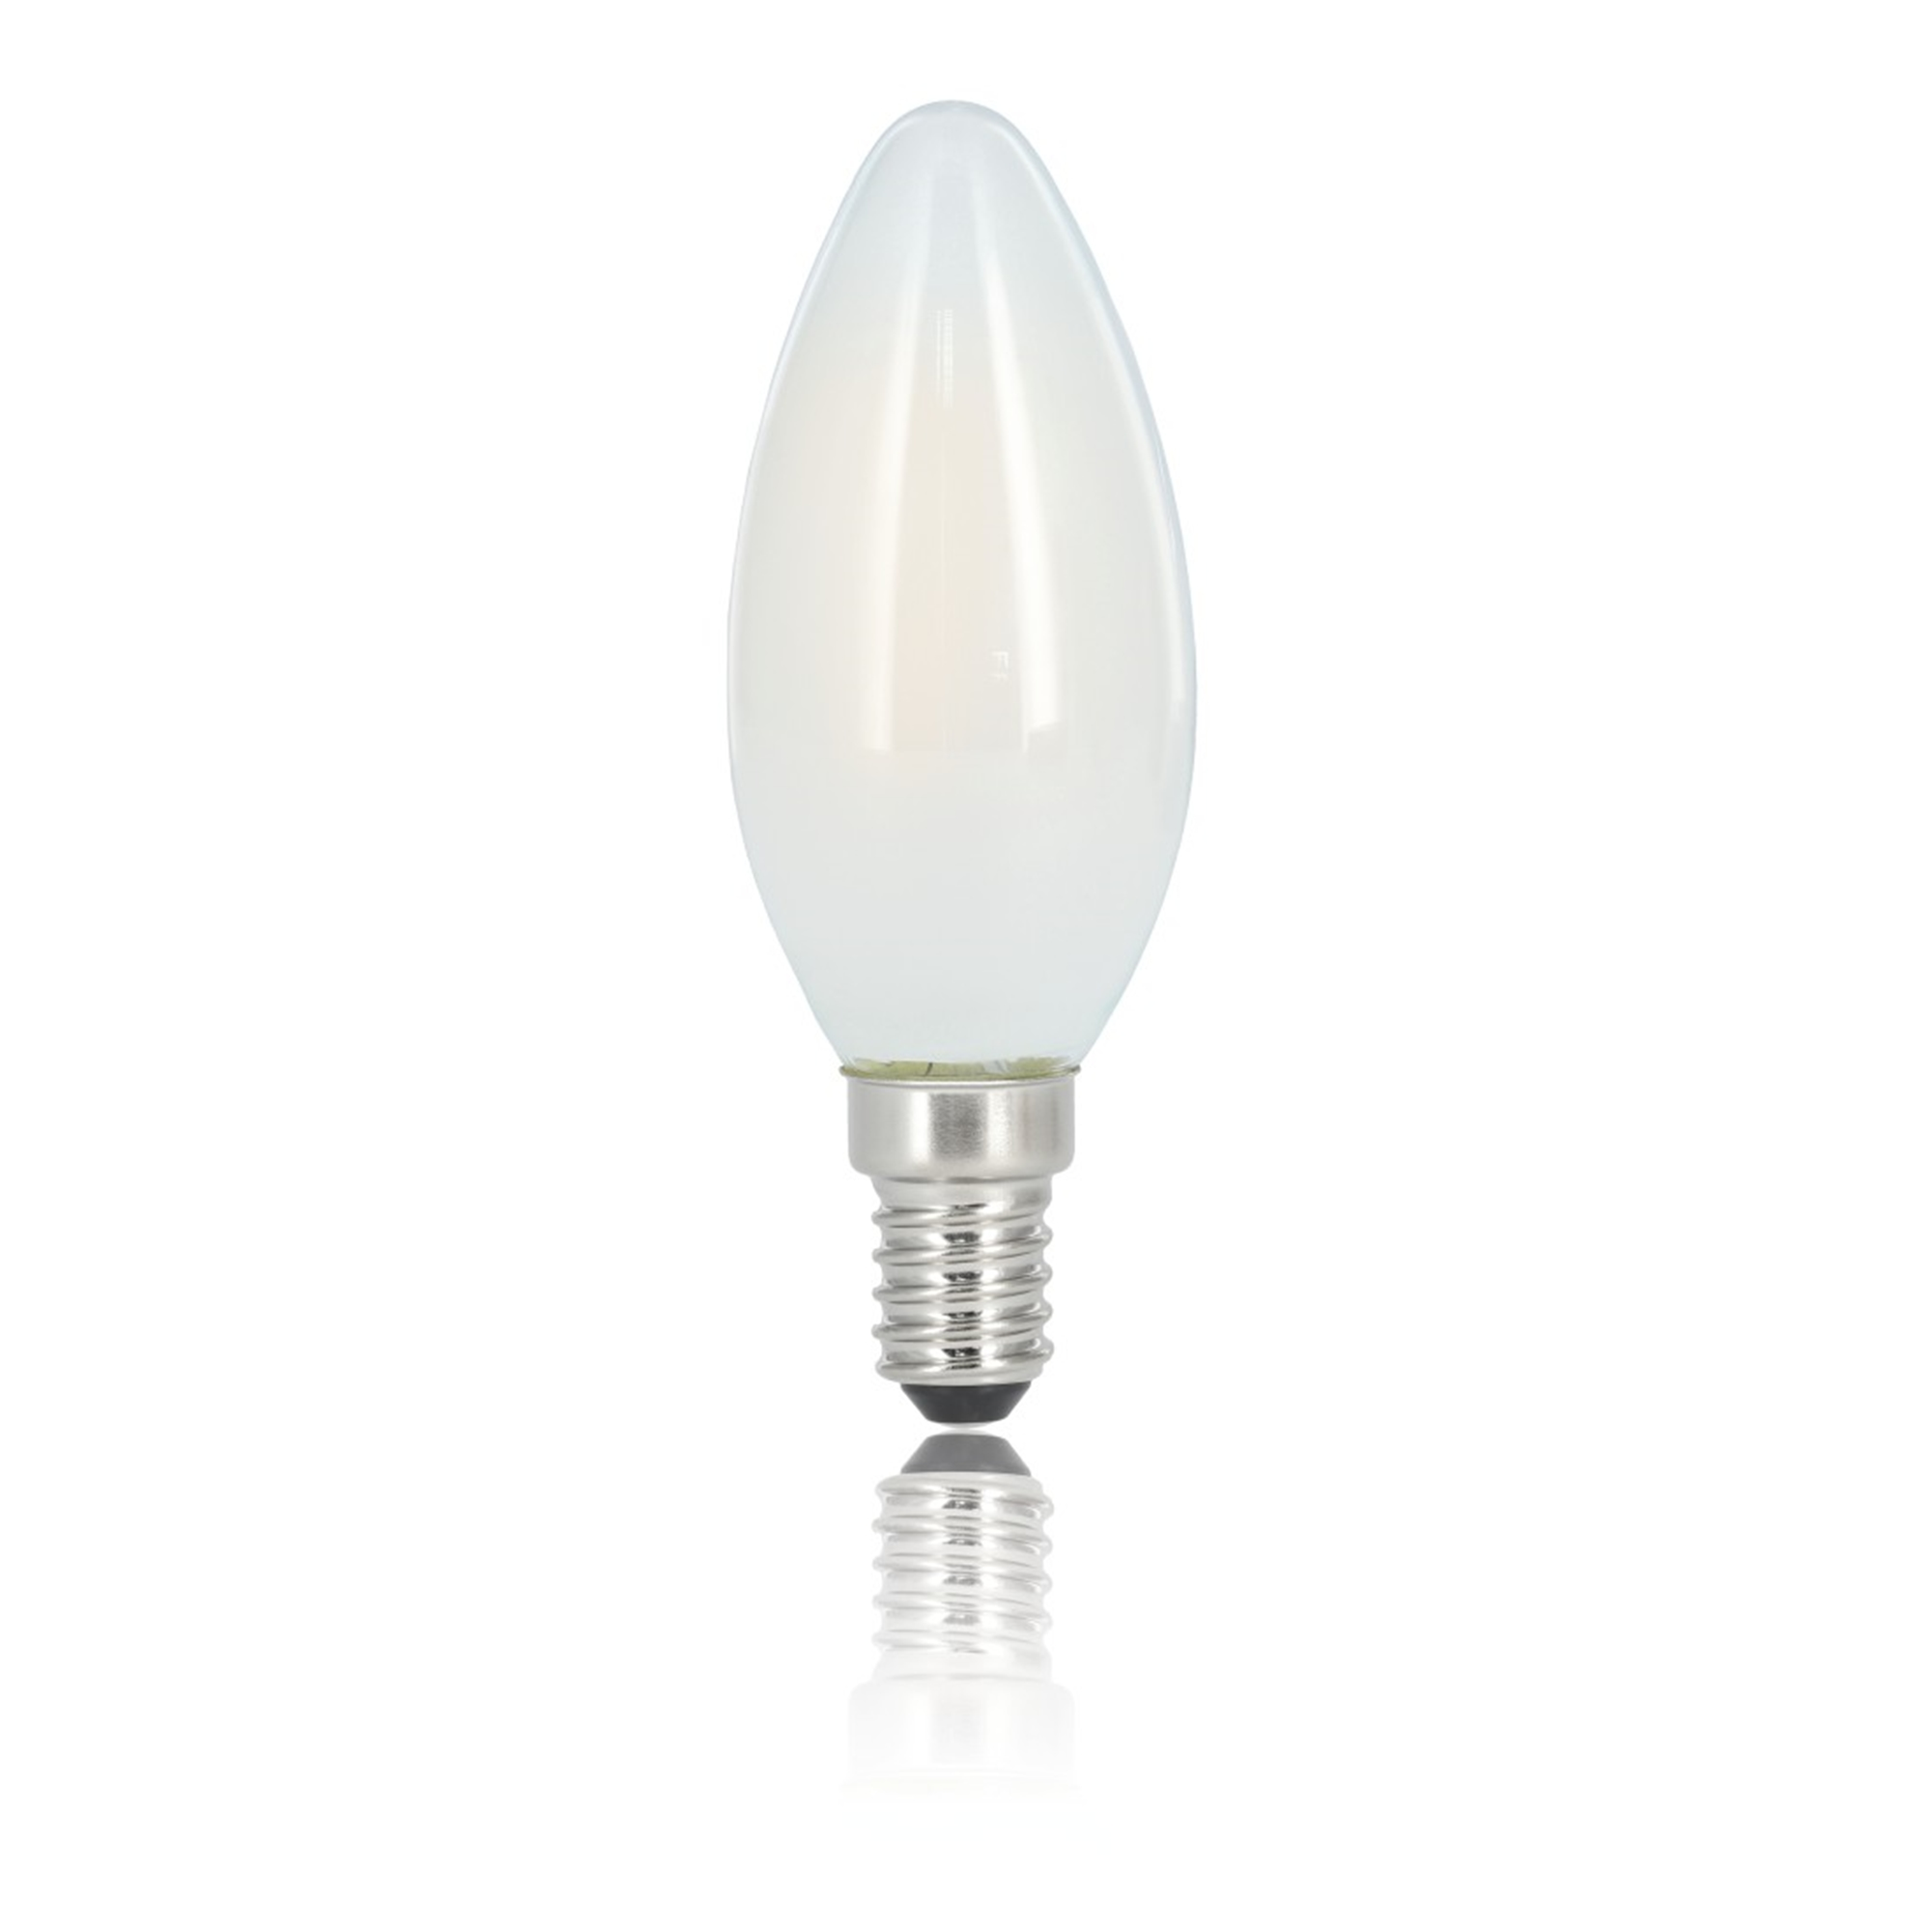 Warmweiß XAVAX 40W E14, 470lm LED-Lampe E14 ersetzt